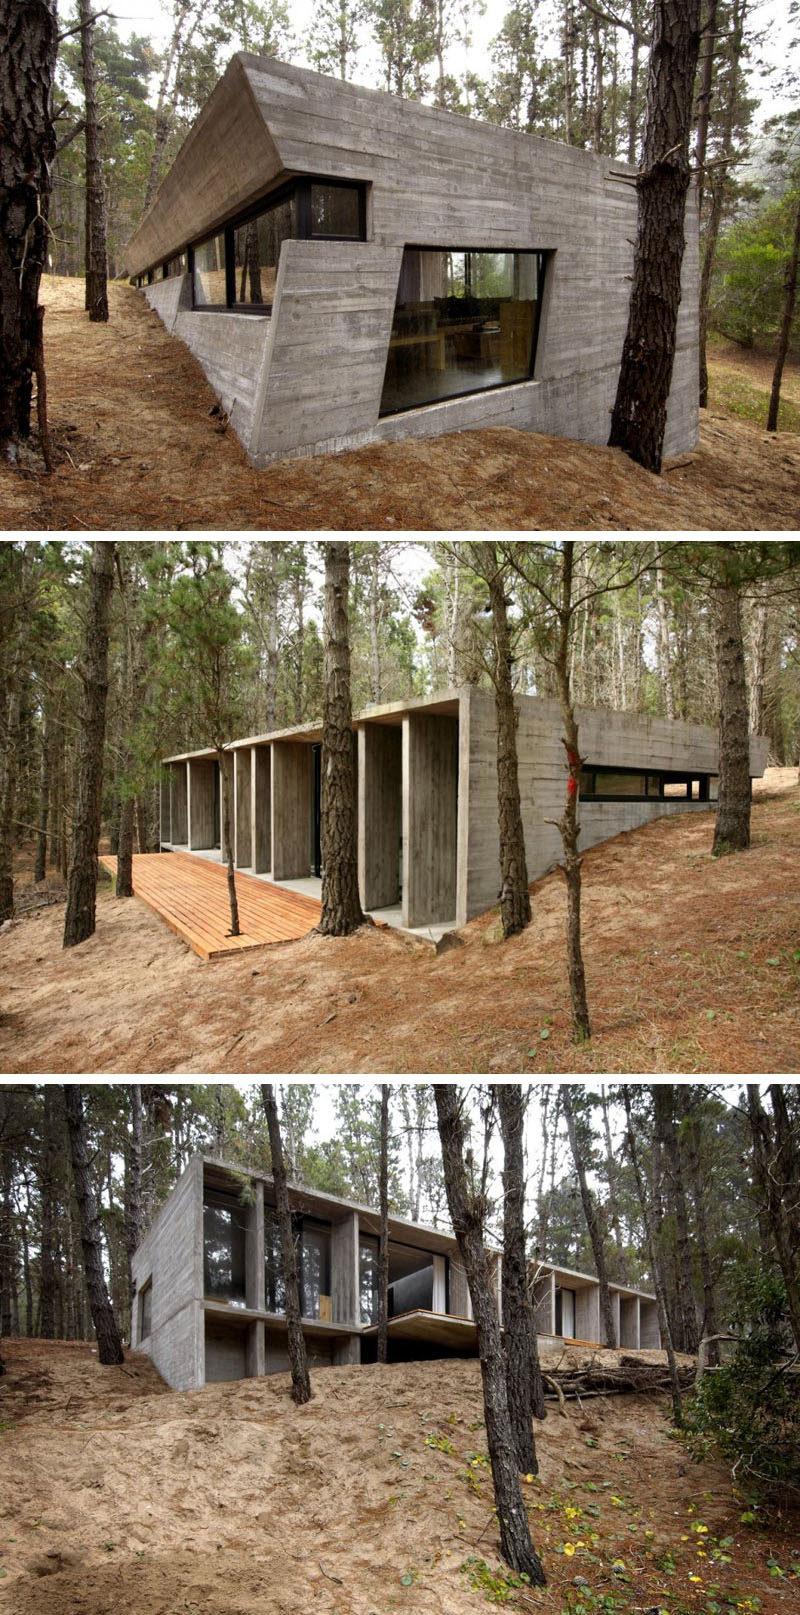 18 Современный дом в лесу // Этот бетонный дом контрастирует с естественными элементами леса, которые его окружают. #ModernHouse #ModernArchitecture #HouseInForest #HouseDesign